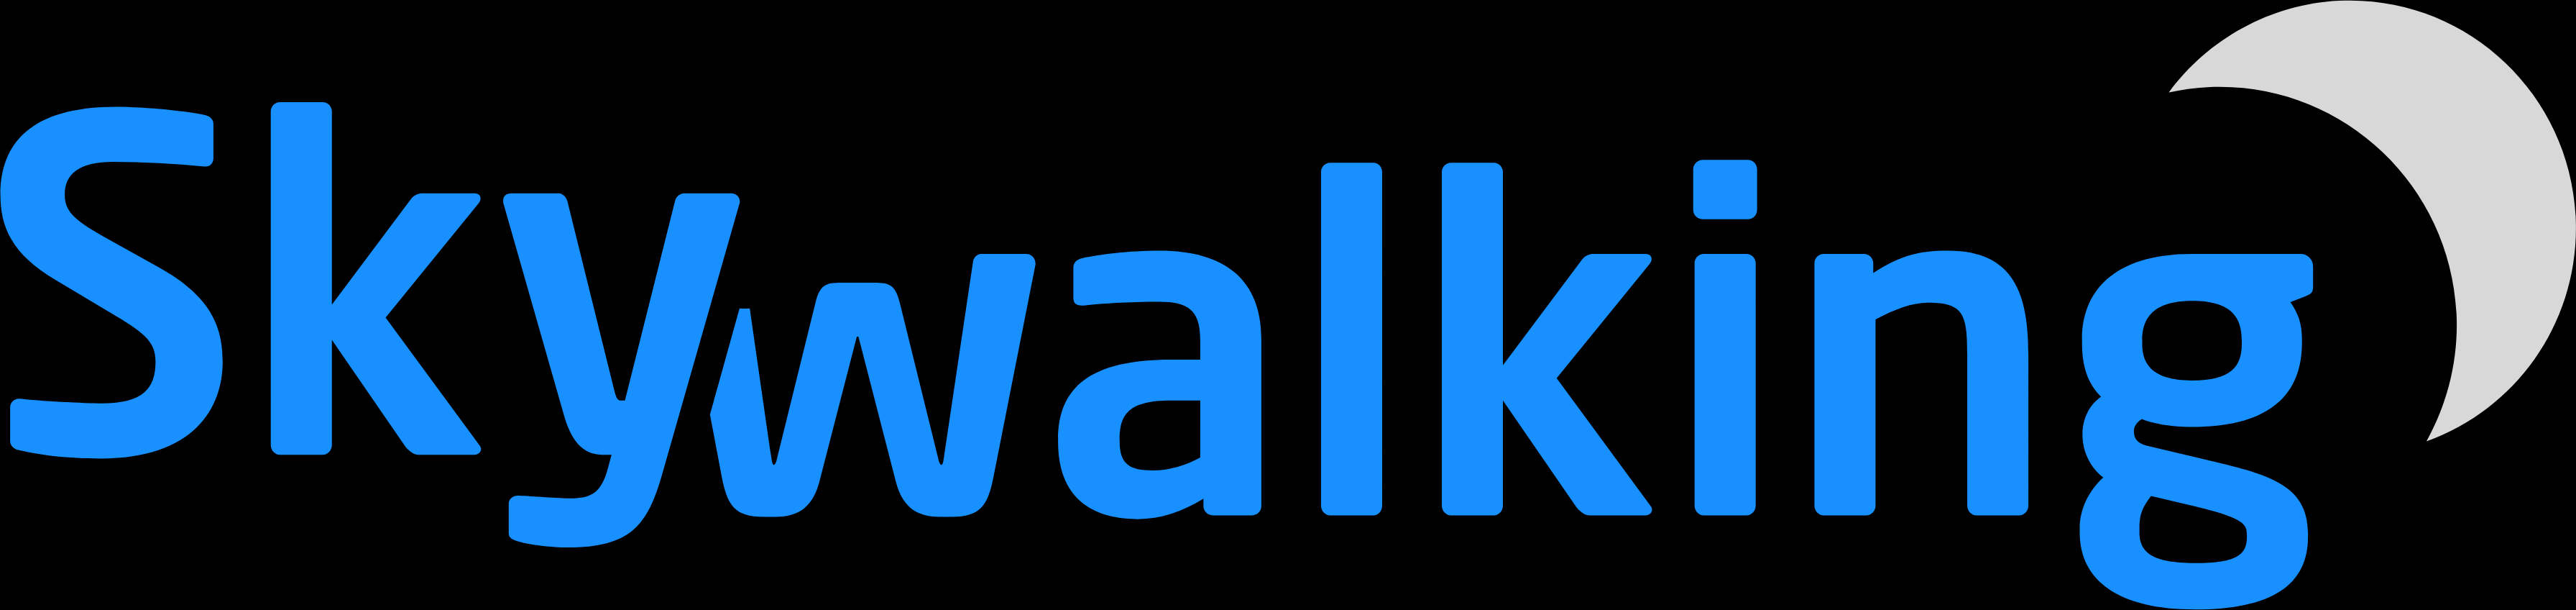 logo/skywalking-logo.png